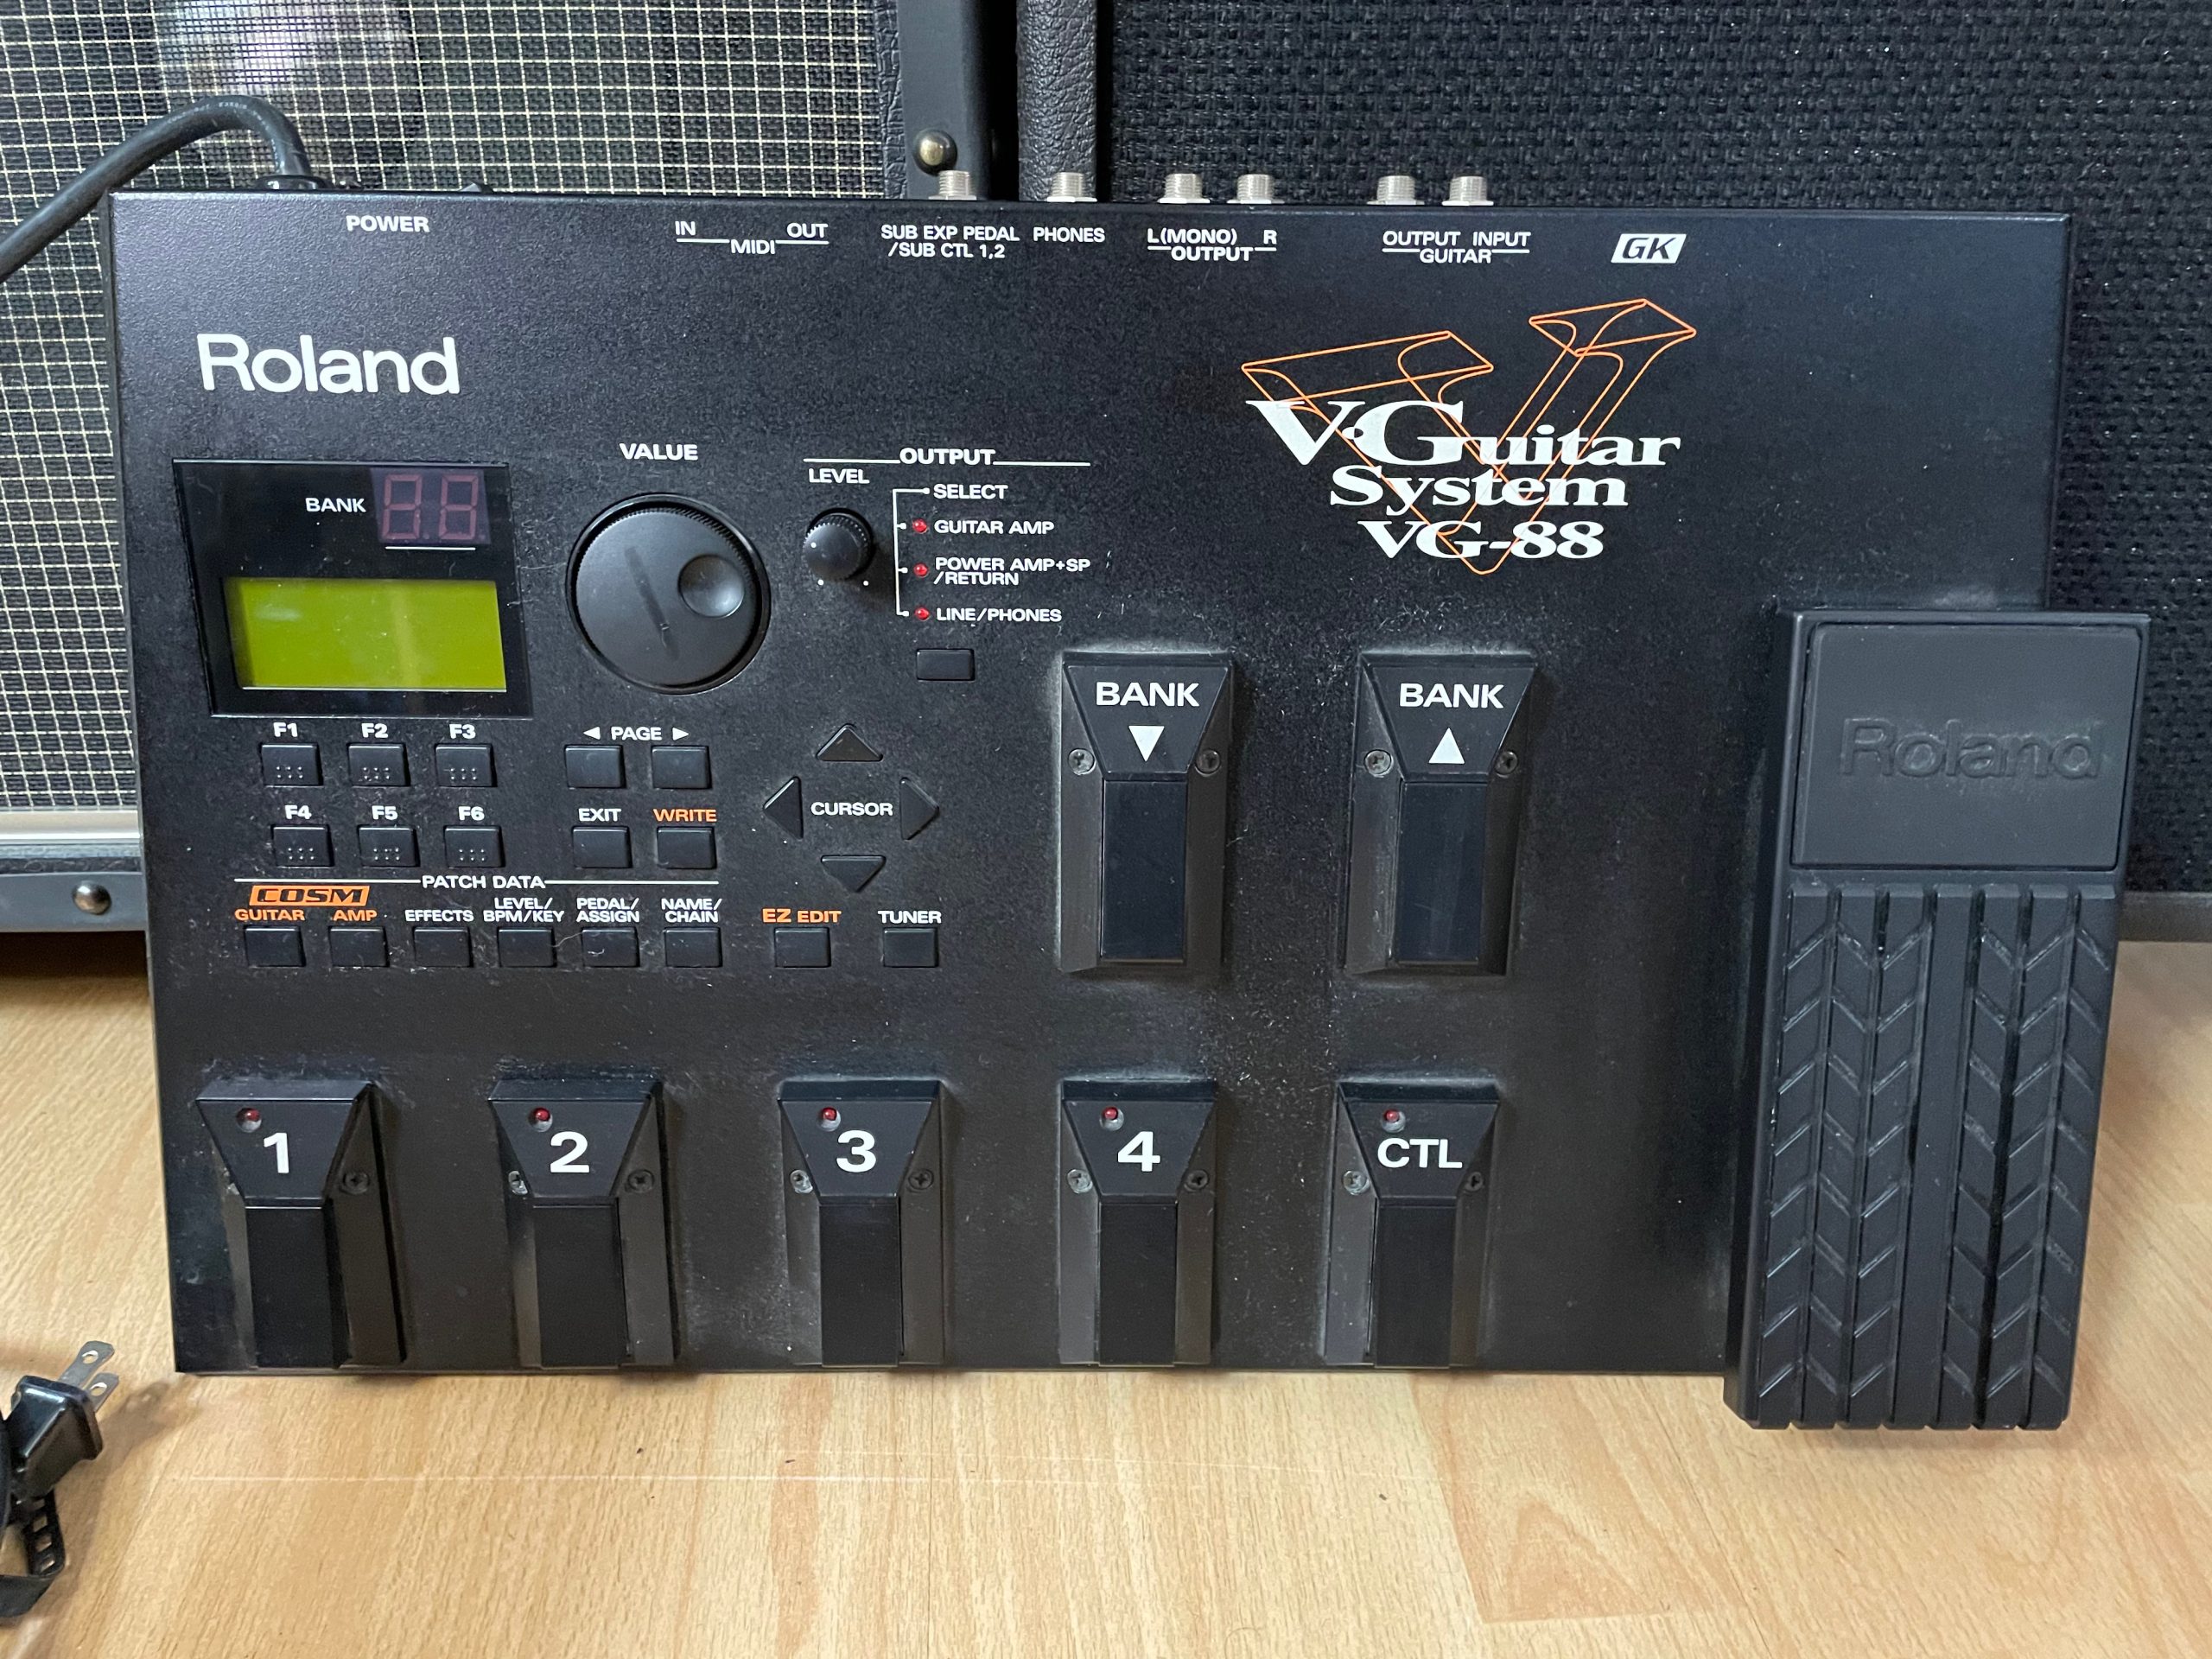 Roland VG-8